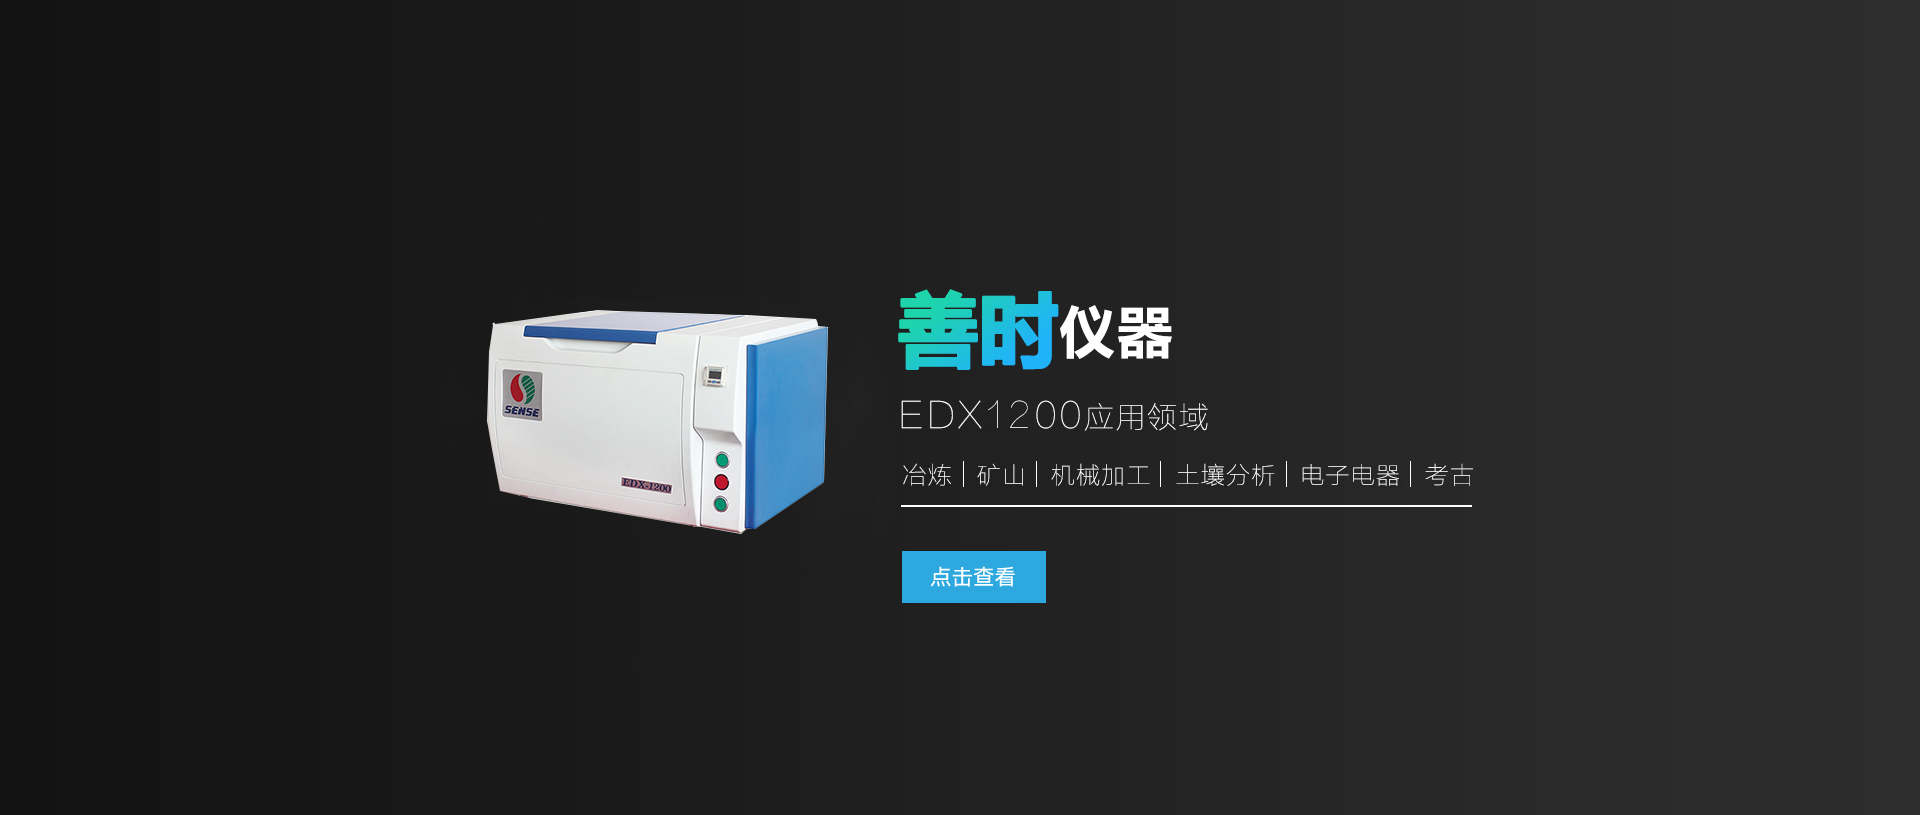 EDX-1200合金分析儀